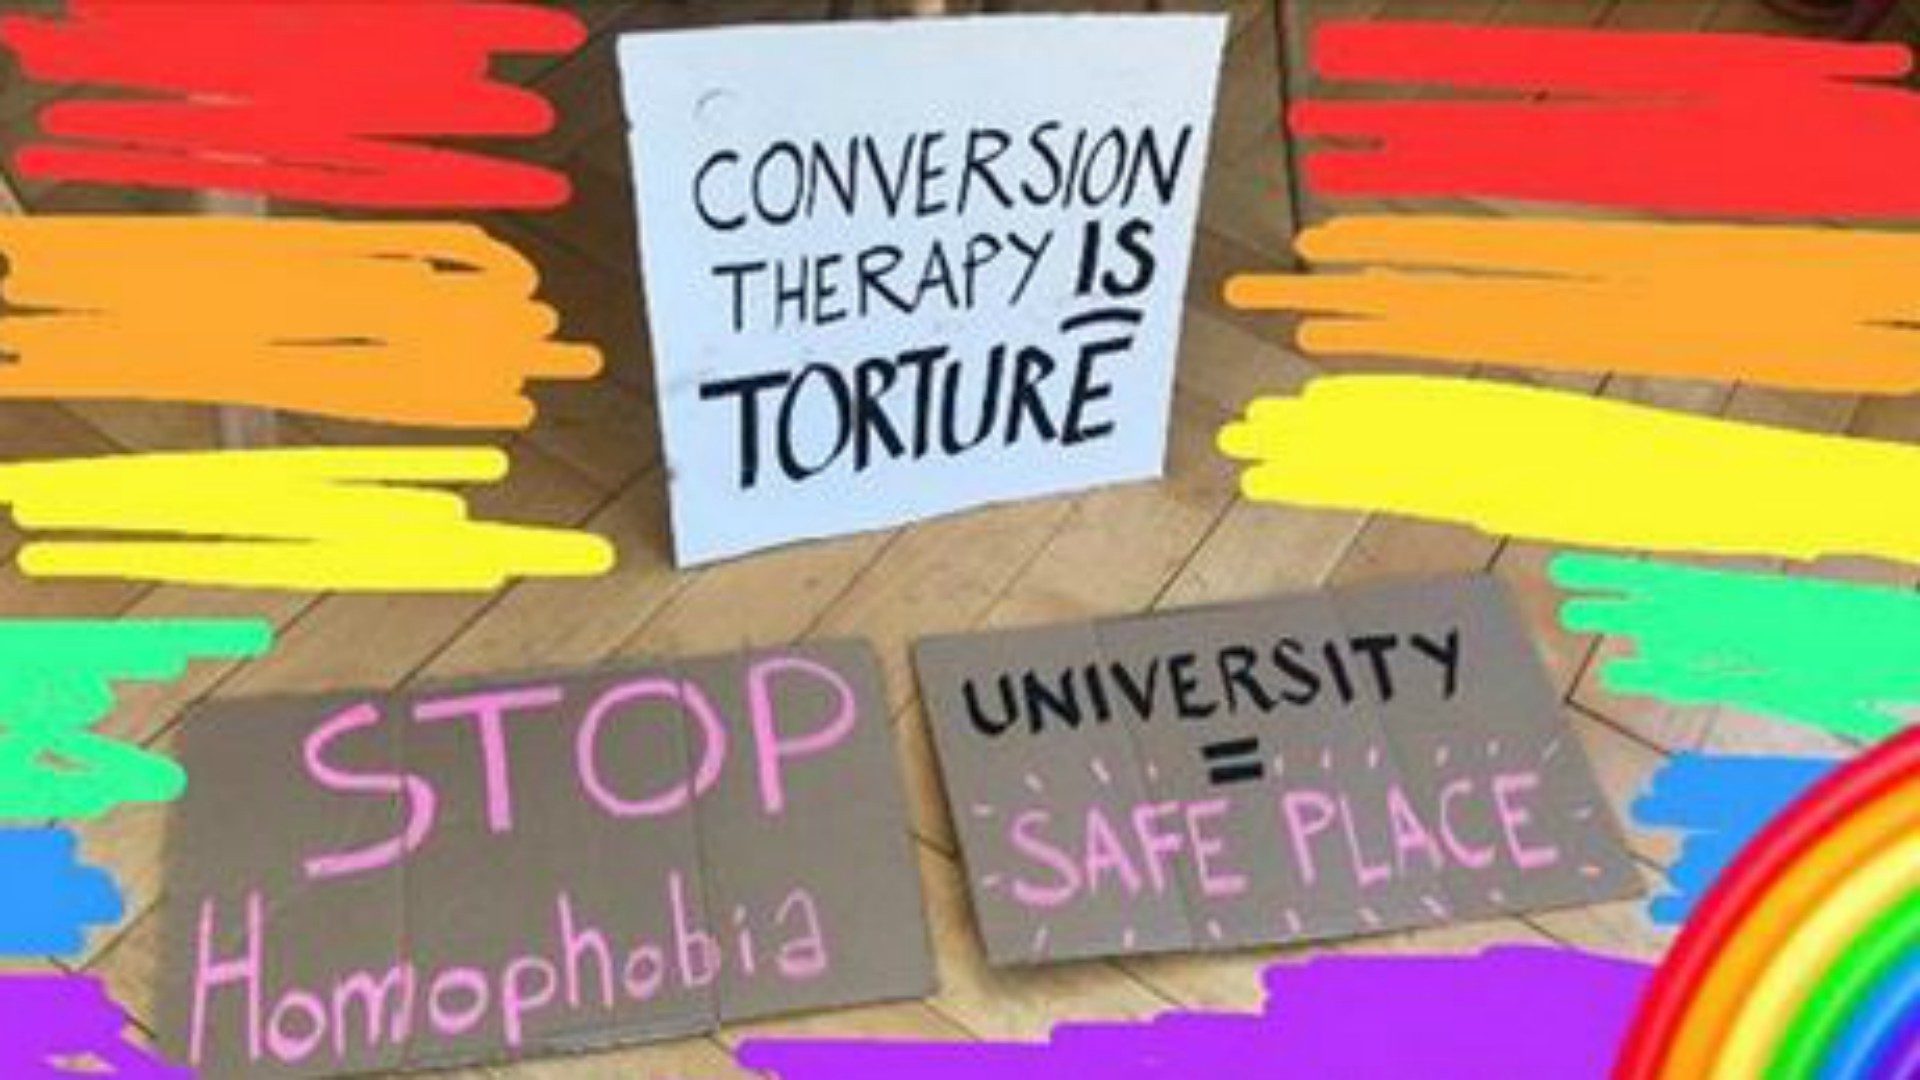 Des étudiants de l'Université de Fribourg manifestent contre des propos qualifiés d'homophobes | Facebook